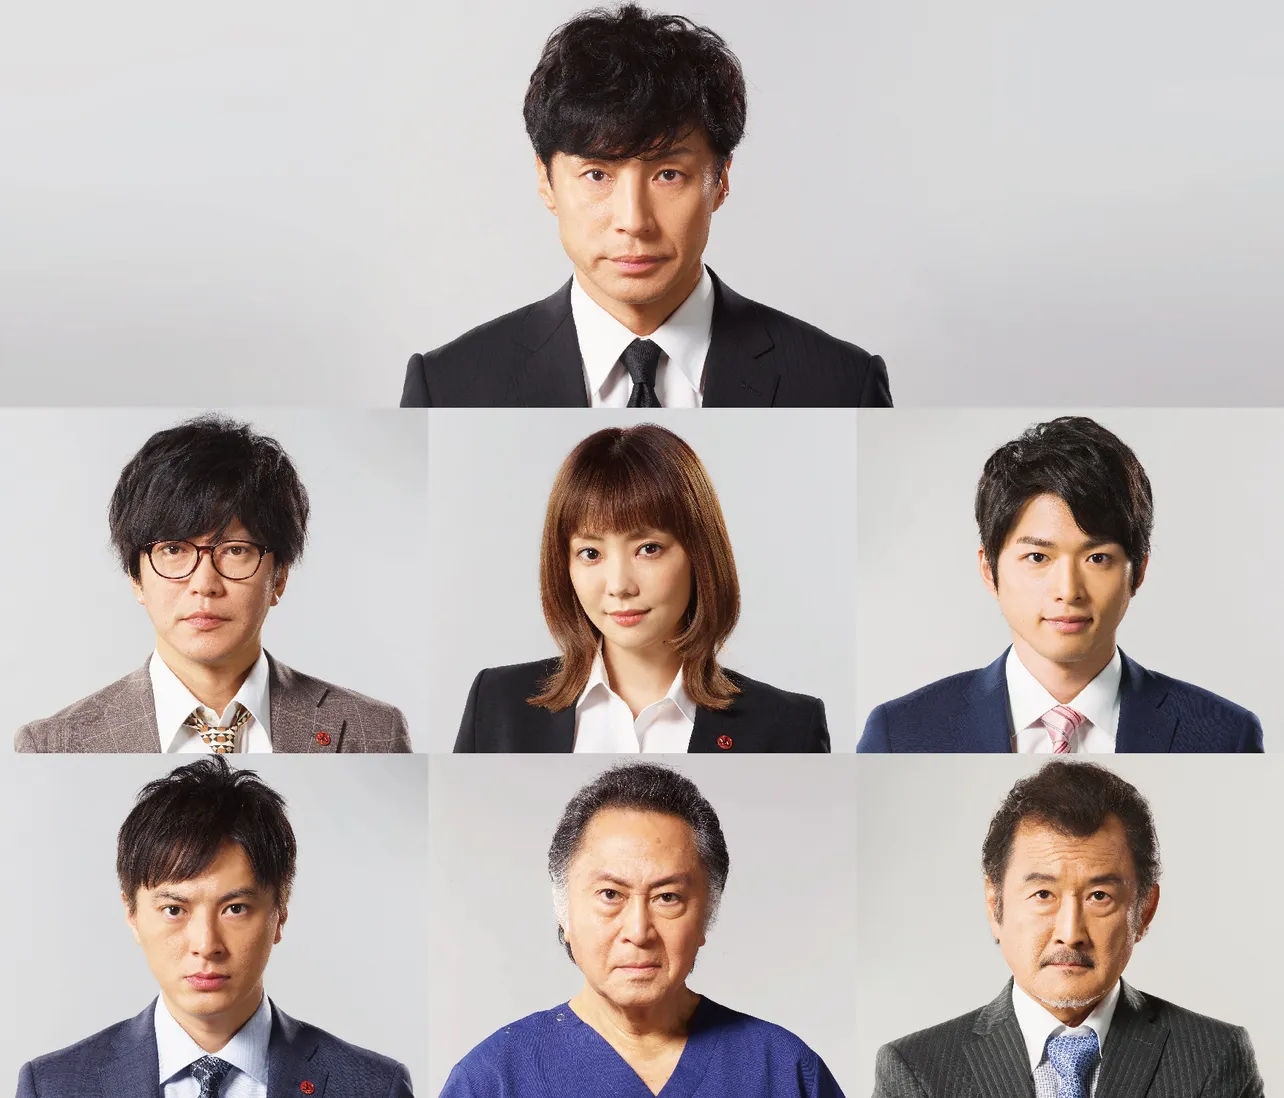 東山紀之主演「刑事7人」(テレビ朝日系)が装いも新たに7月スタート